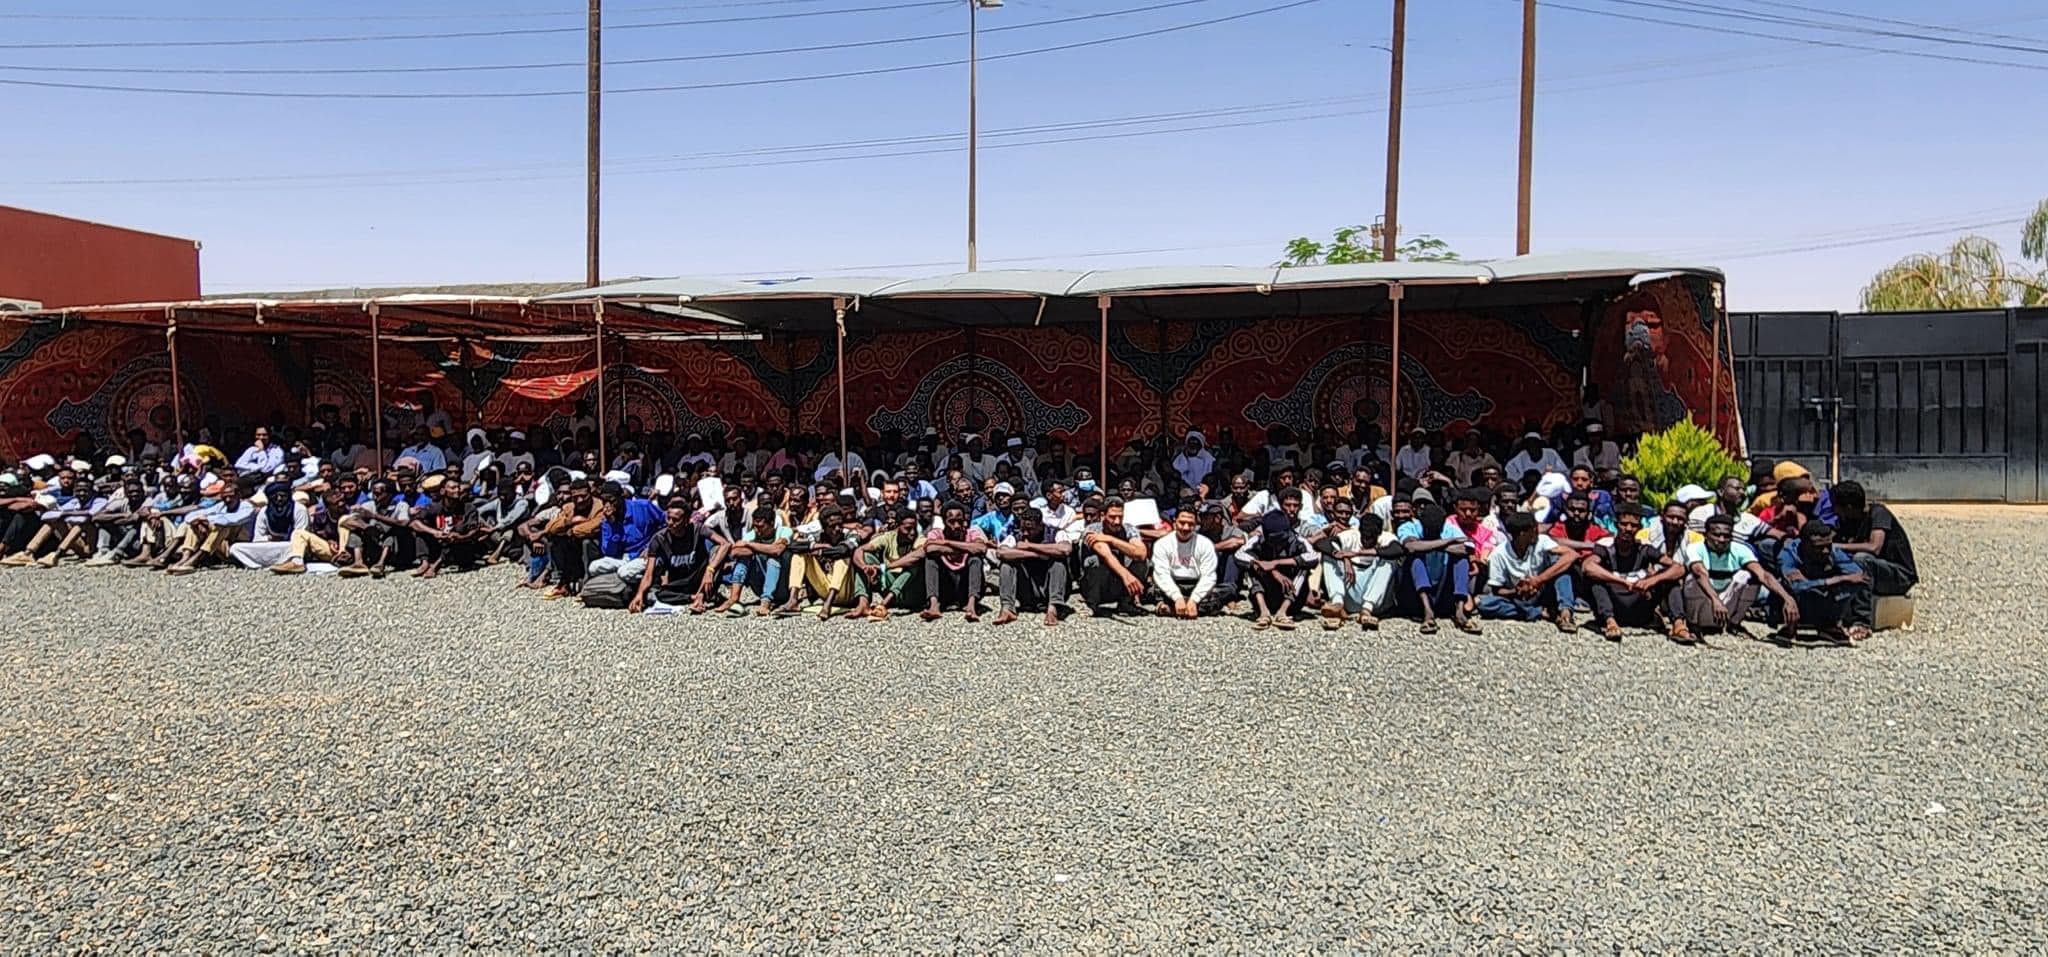 المؤسسة الوطنية لحقوق الإنسان تطلع على الأوضاع الإنسانية للنازحين واللاجئين السودانيين بمدينة الكفرة .